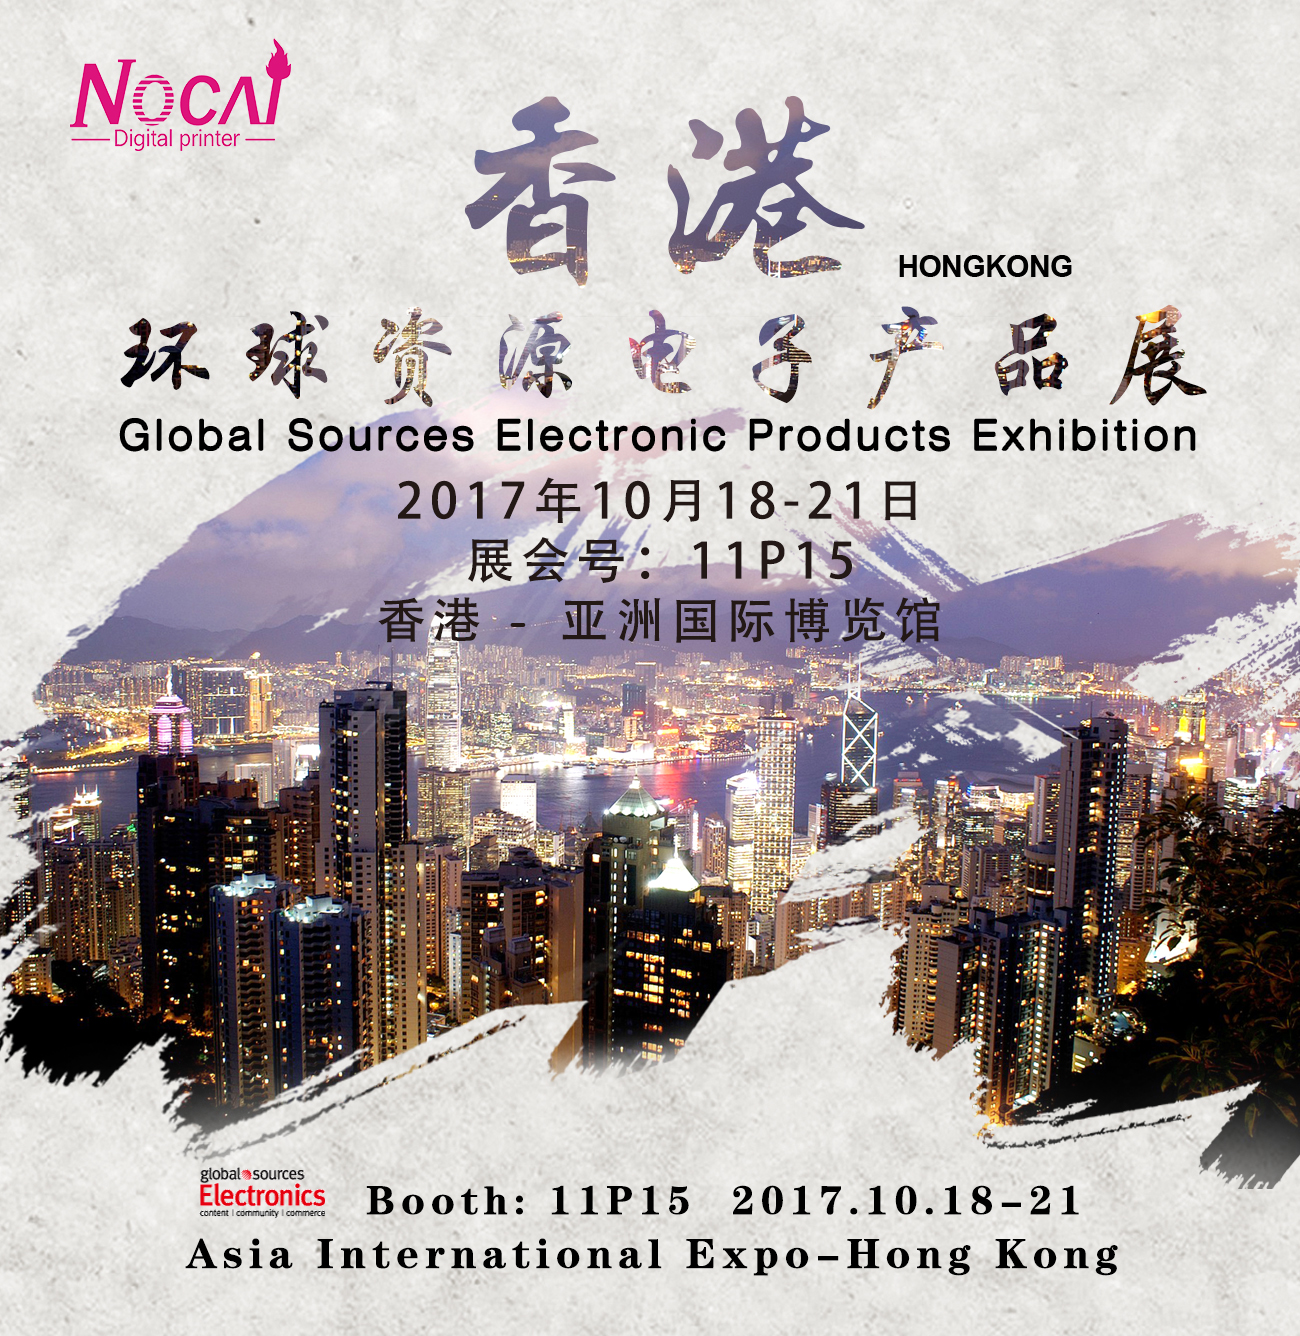 nuocai邀您参加《香港环球资源电子产品展》